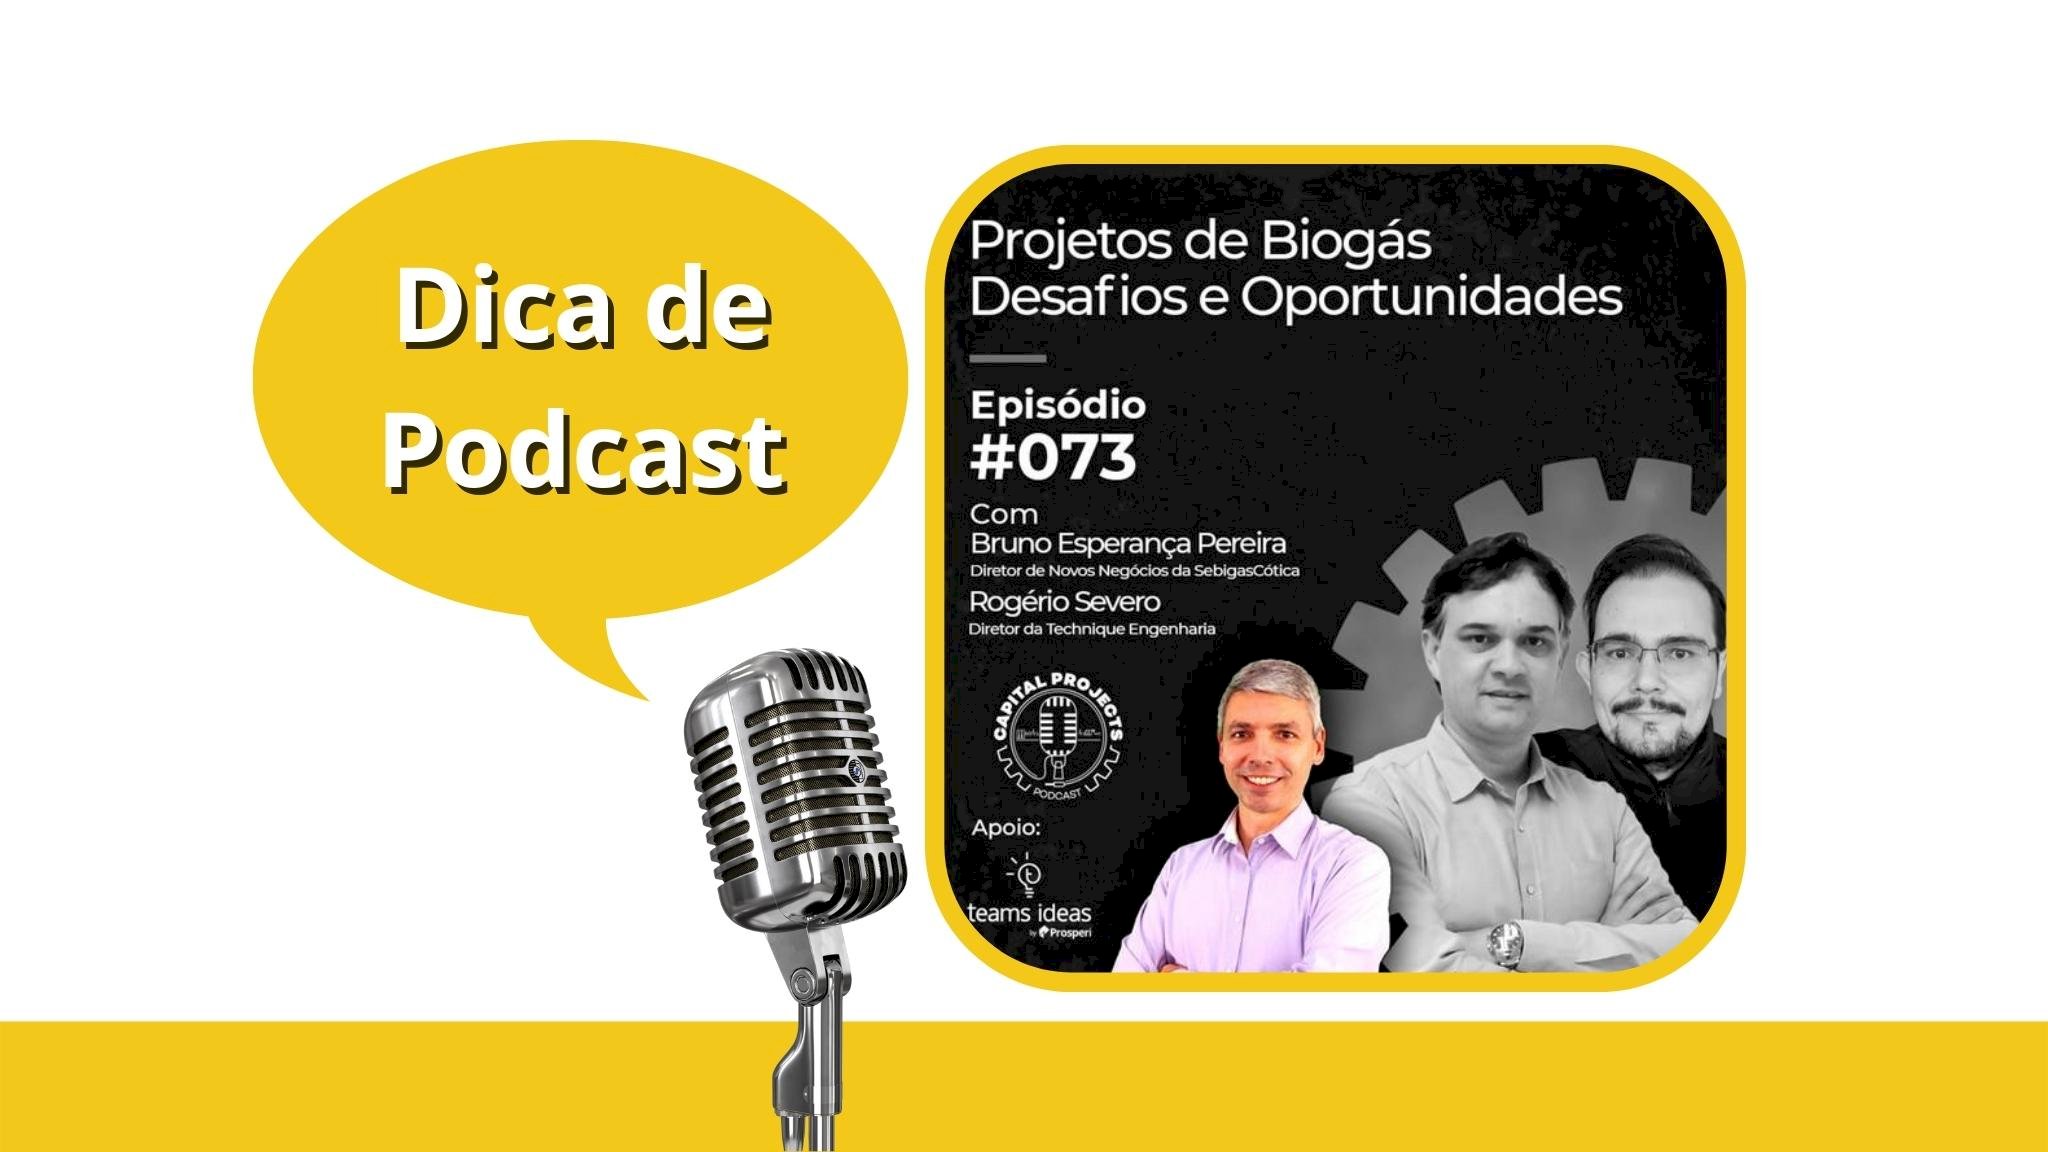 Dica de podcast - Projetos de Biogás, Desafios e Oportunidades